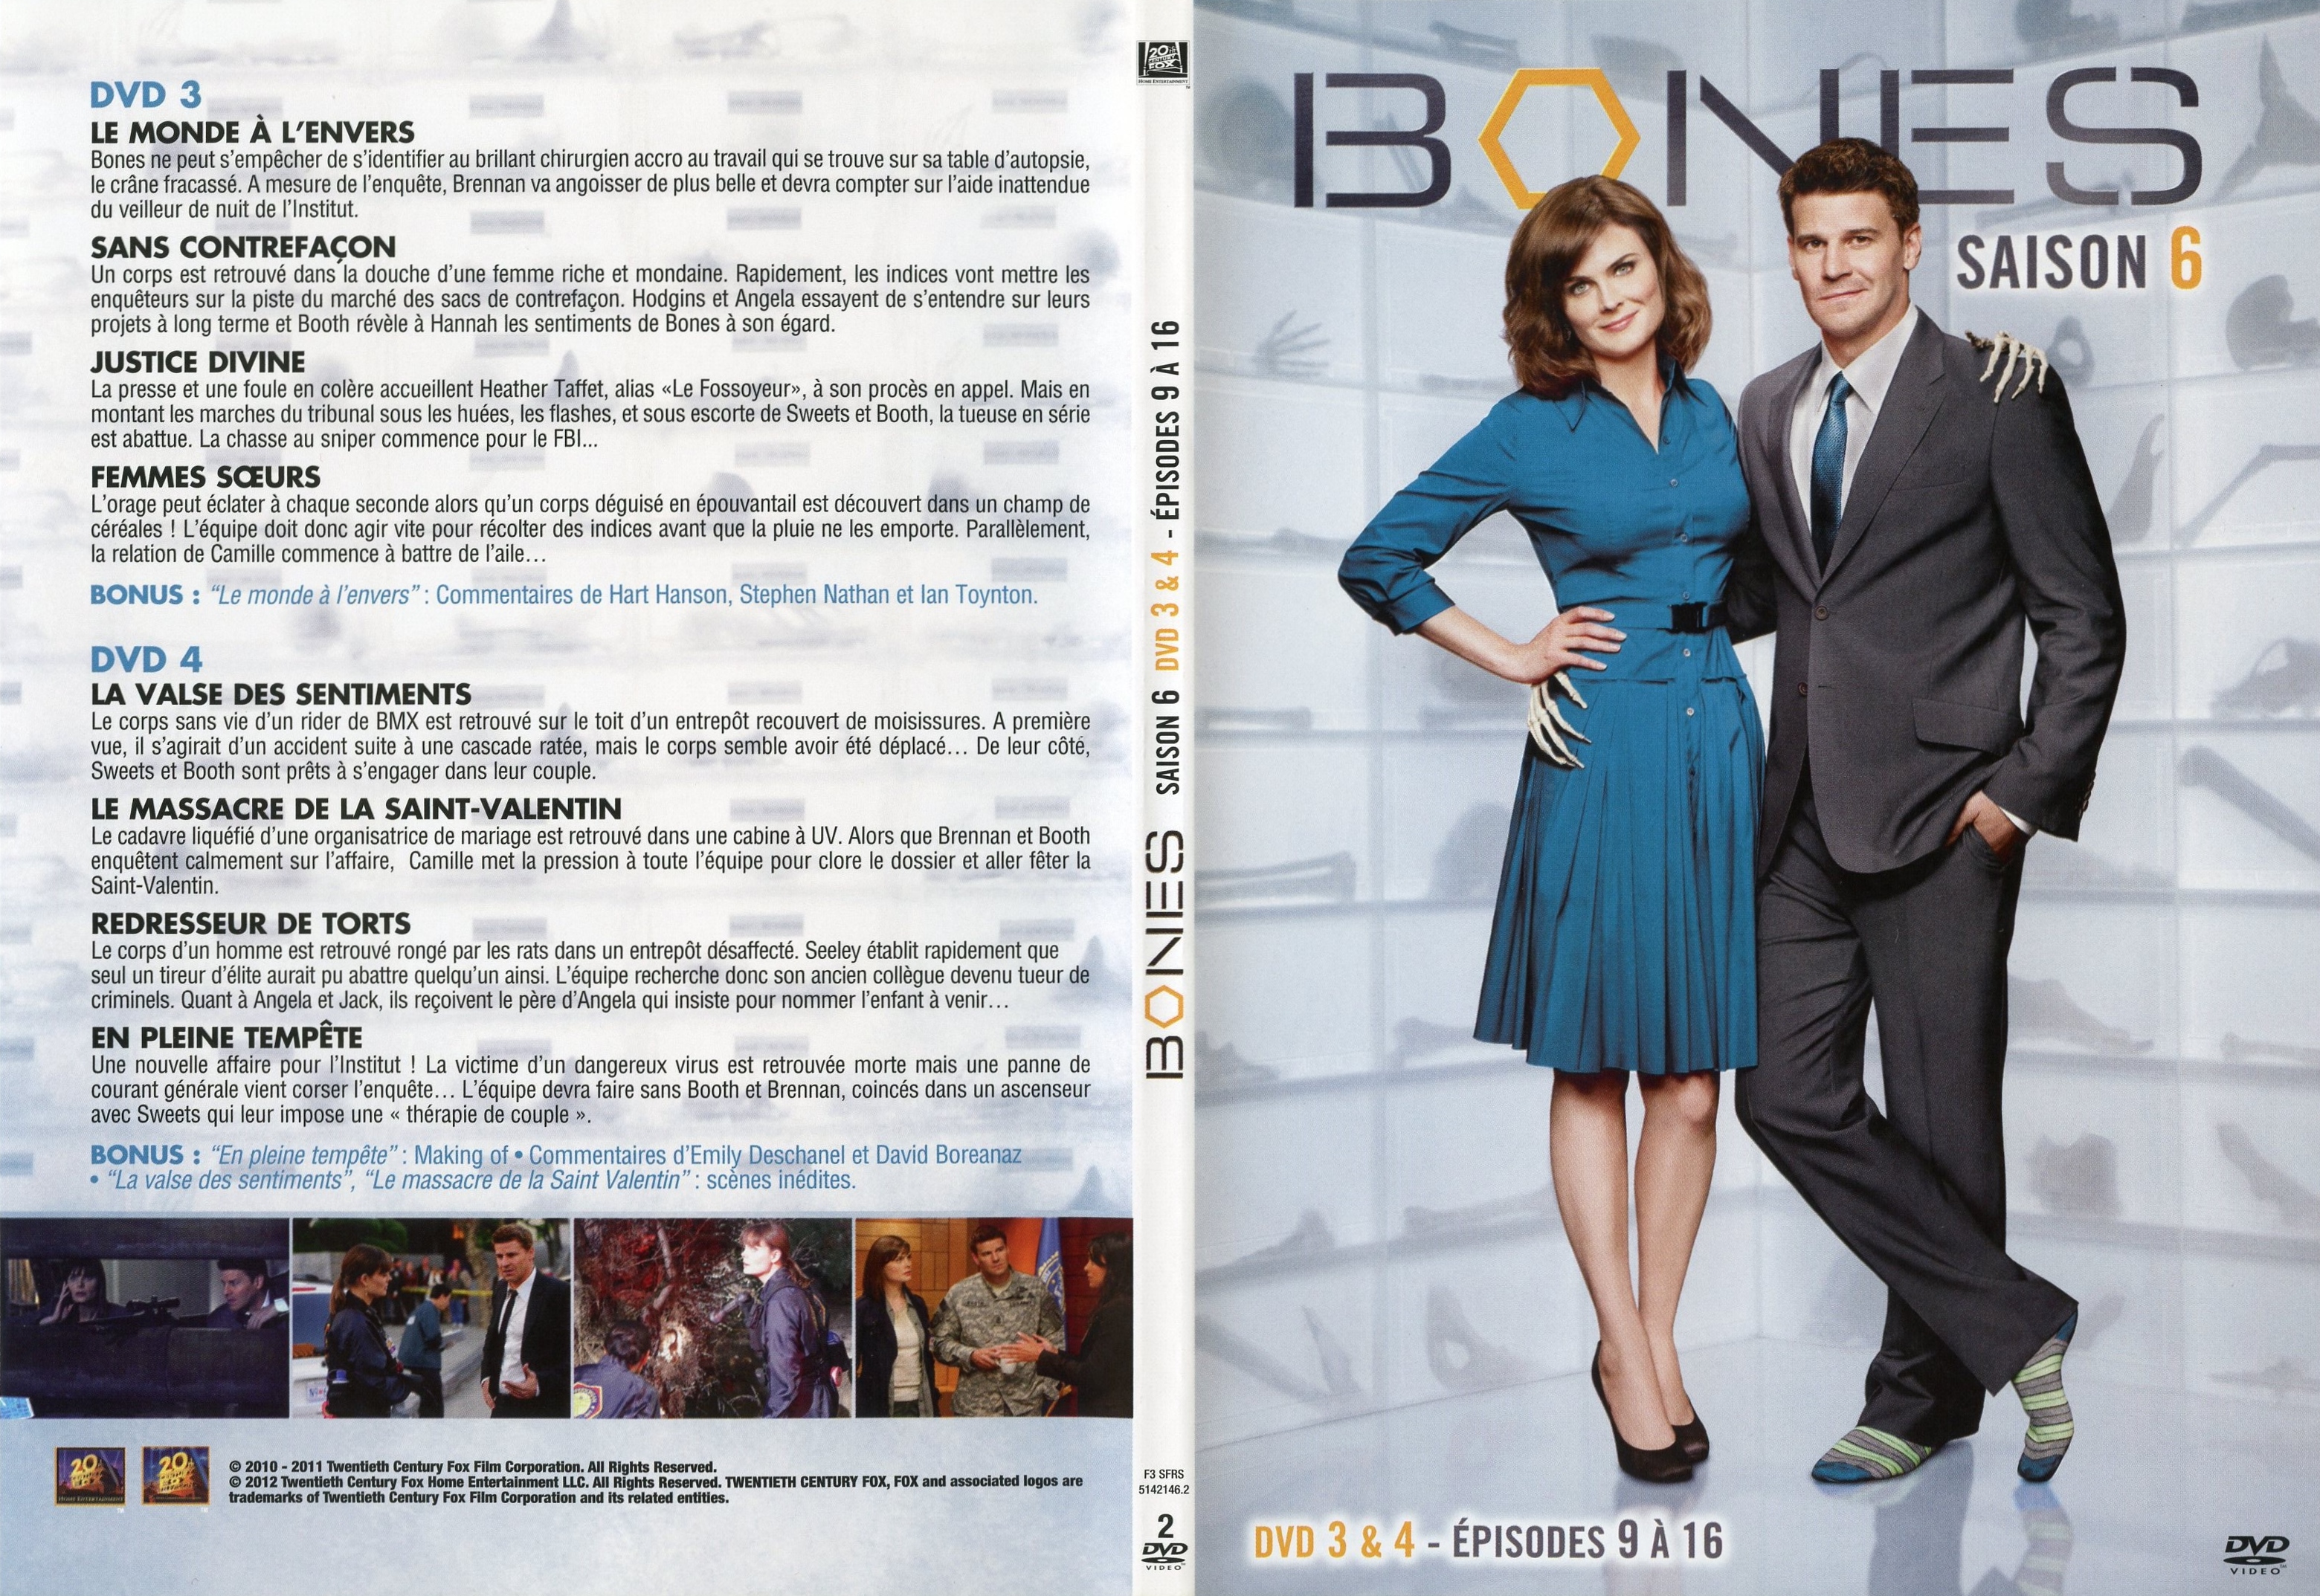 Jaquette DVD Bones Saison 6 DVD 2